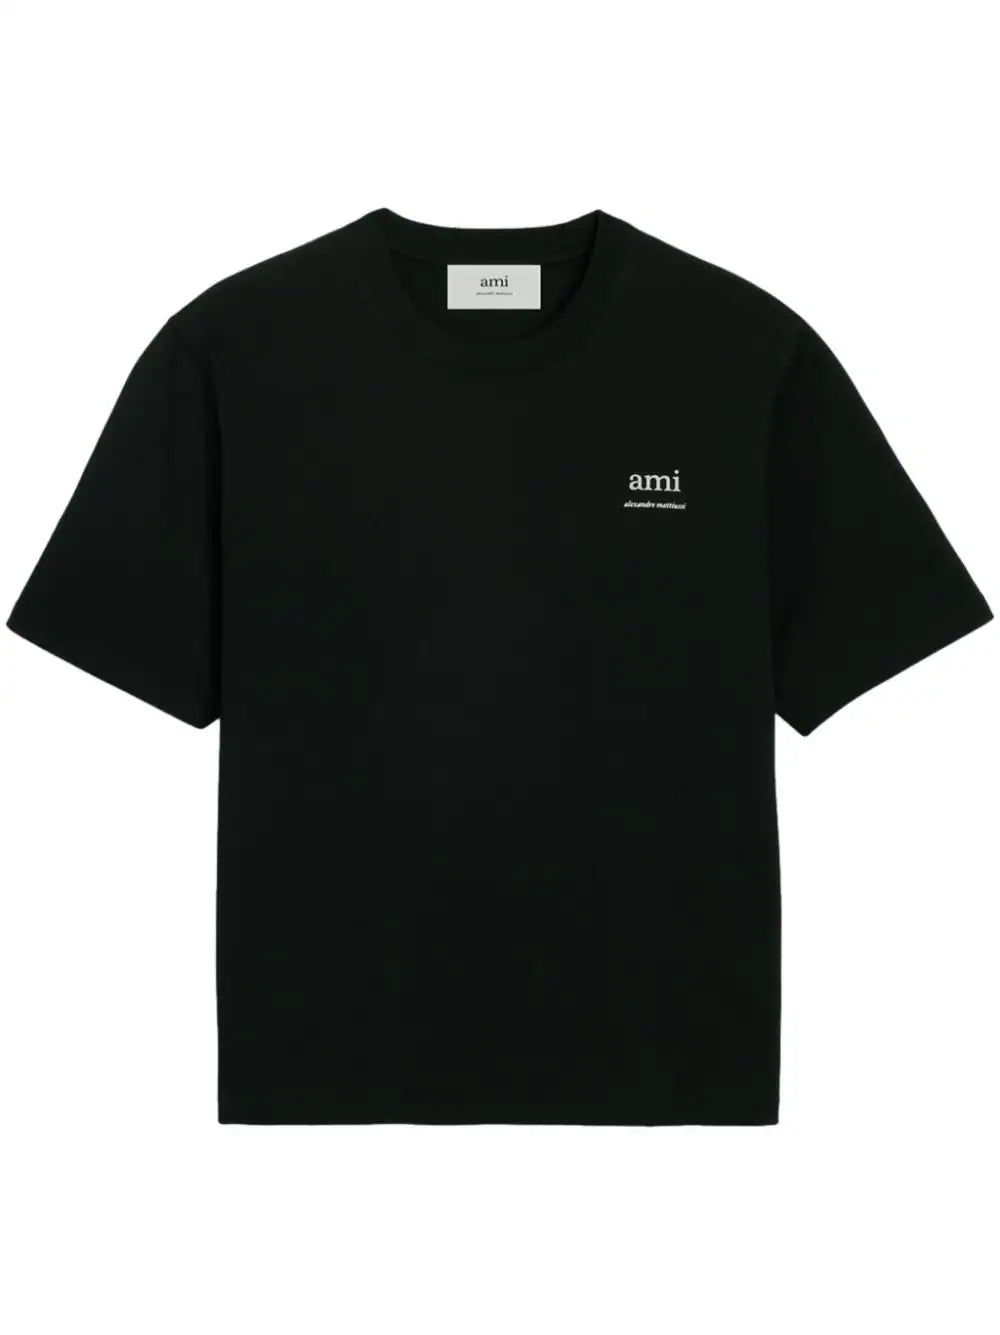 AMI Paris t-shirt en coton biologique à logo